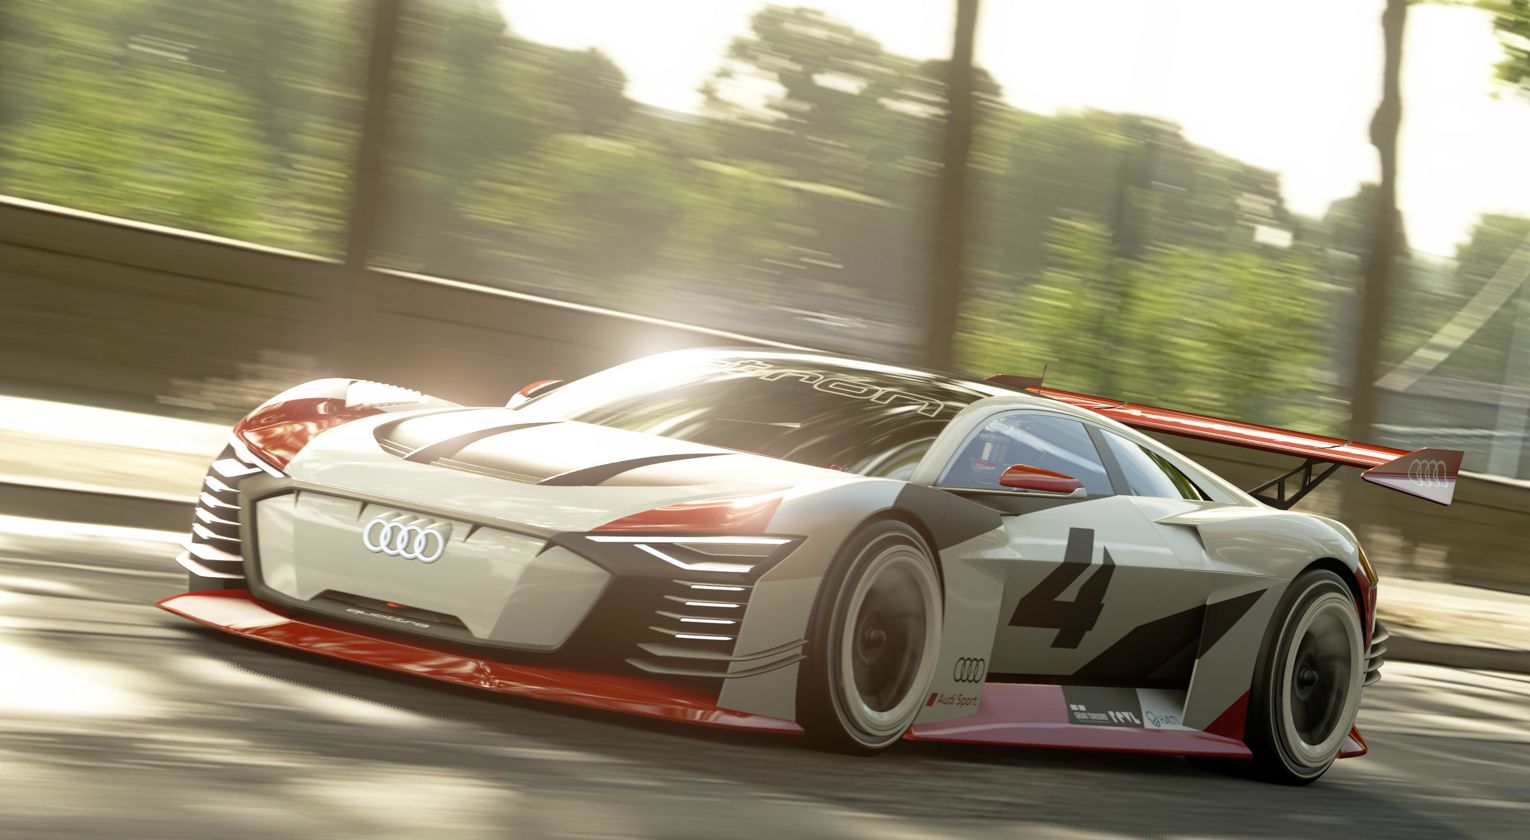 Izmišljeni automobil iz Gran Turismo igara postao stvarnost!